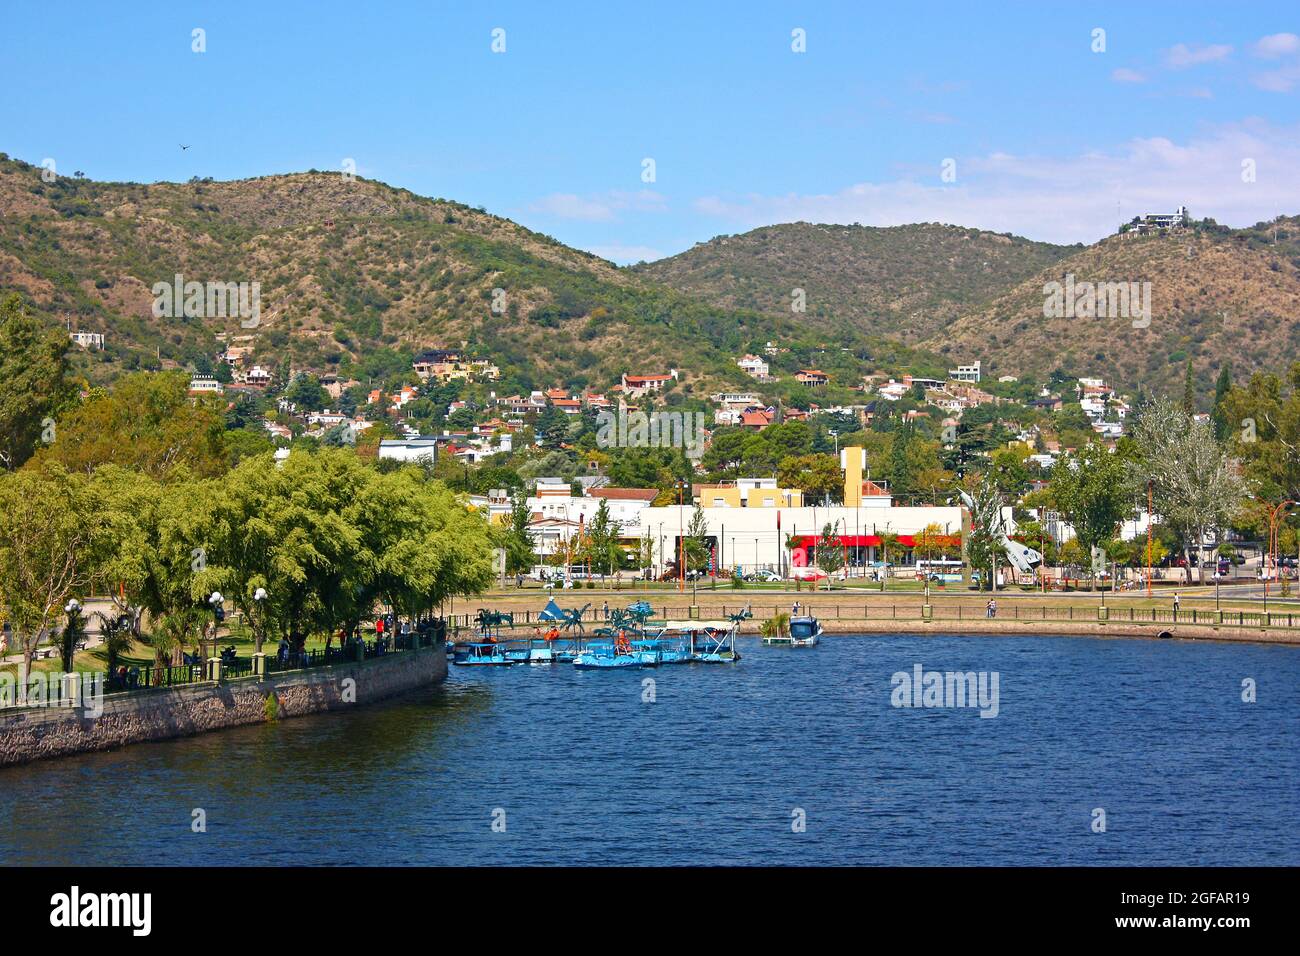 VILLA CARLOS PAZ, CORDOBA, ARGENTINE la ville en une journée ensoleillée. Le lac San Roque en premier plan et les collines en arrière-plan. Banque D'Images